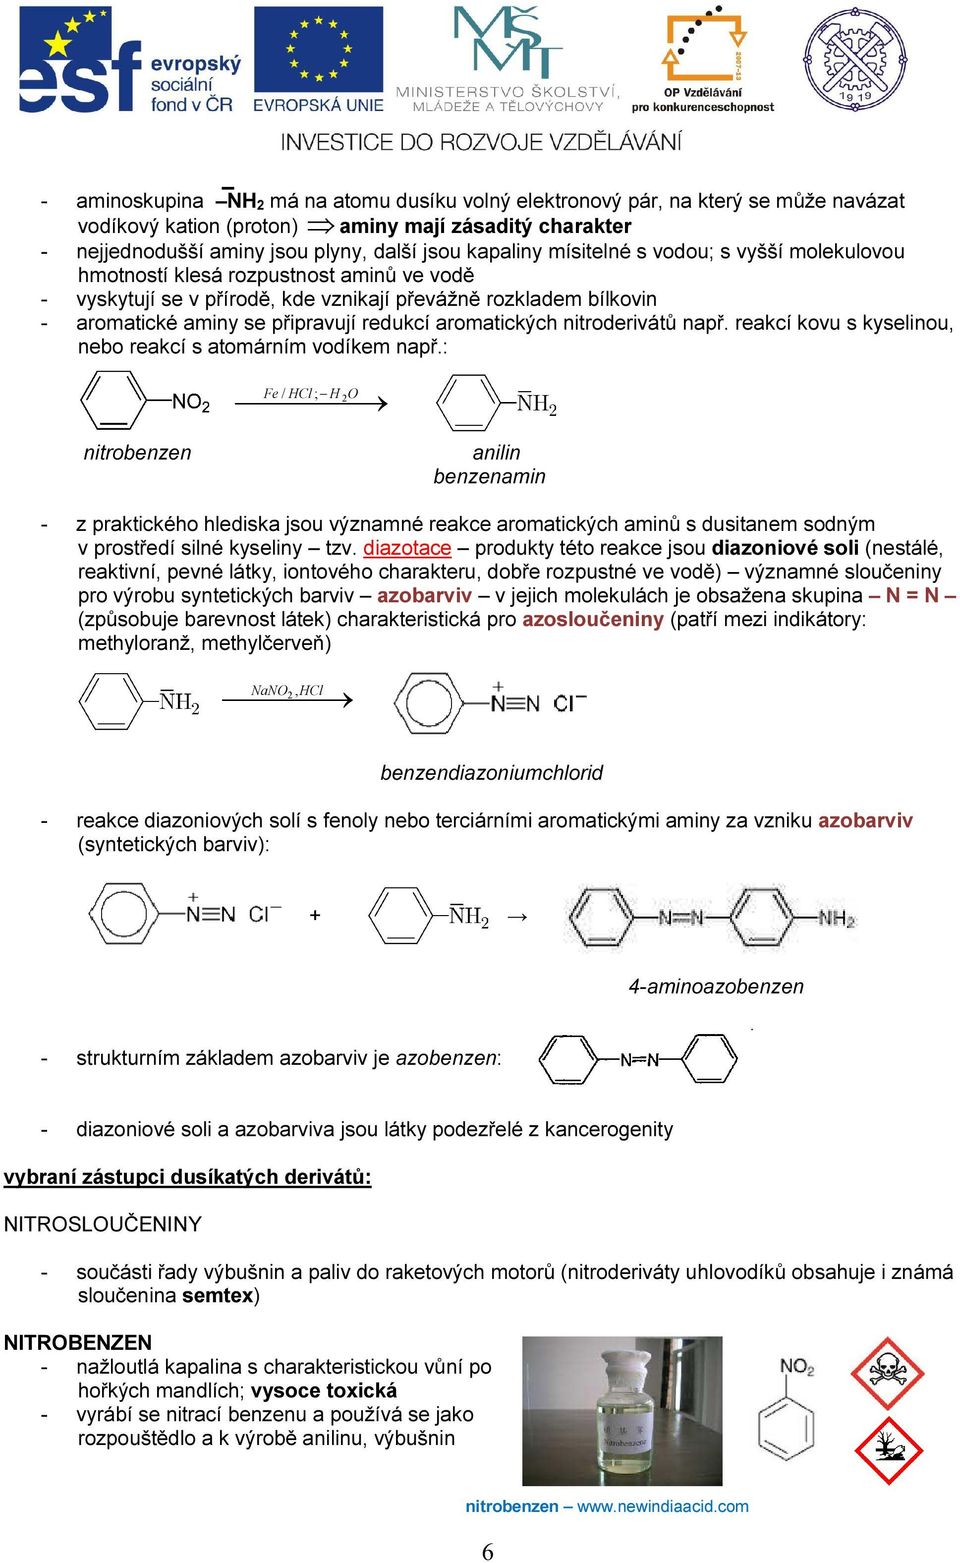 aromatických nitroderivátů např. reakcí kovu s kyselinou, nebo reakcí s atomárním vodíkem např.